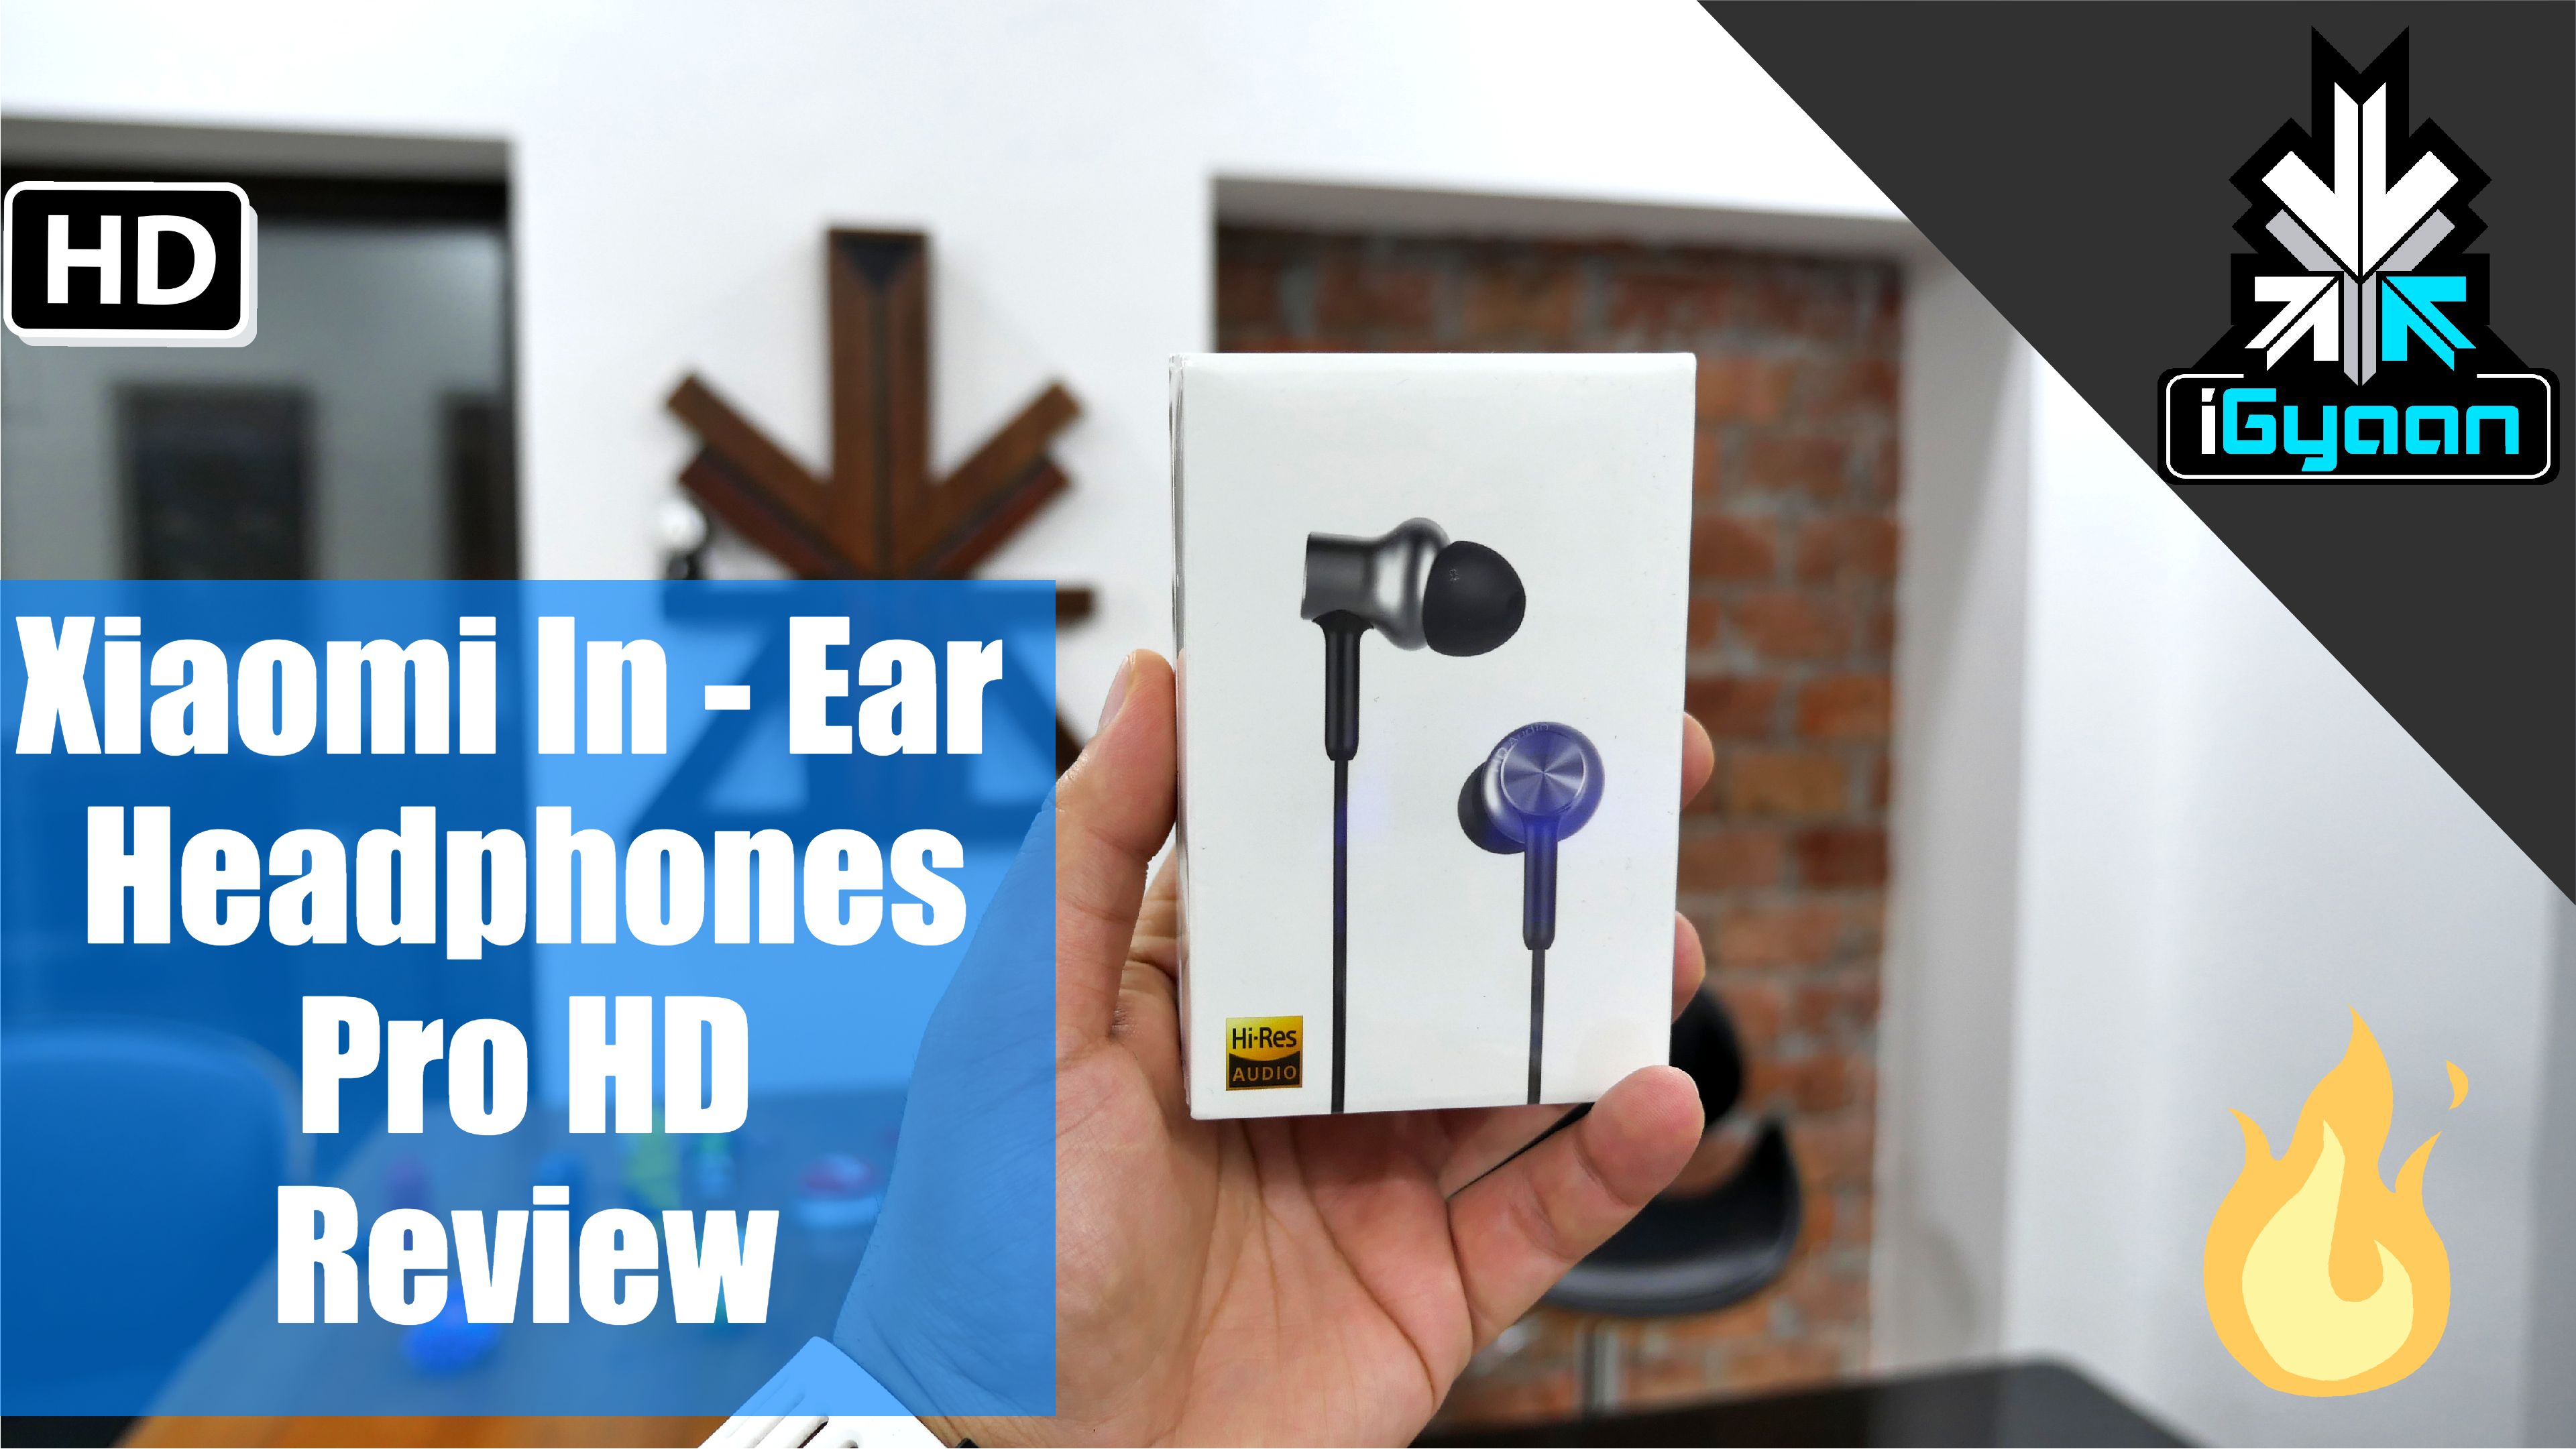 Xiaomi Mi In Ear Headphones Pro Hd Review Igyaan